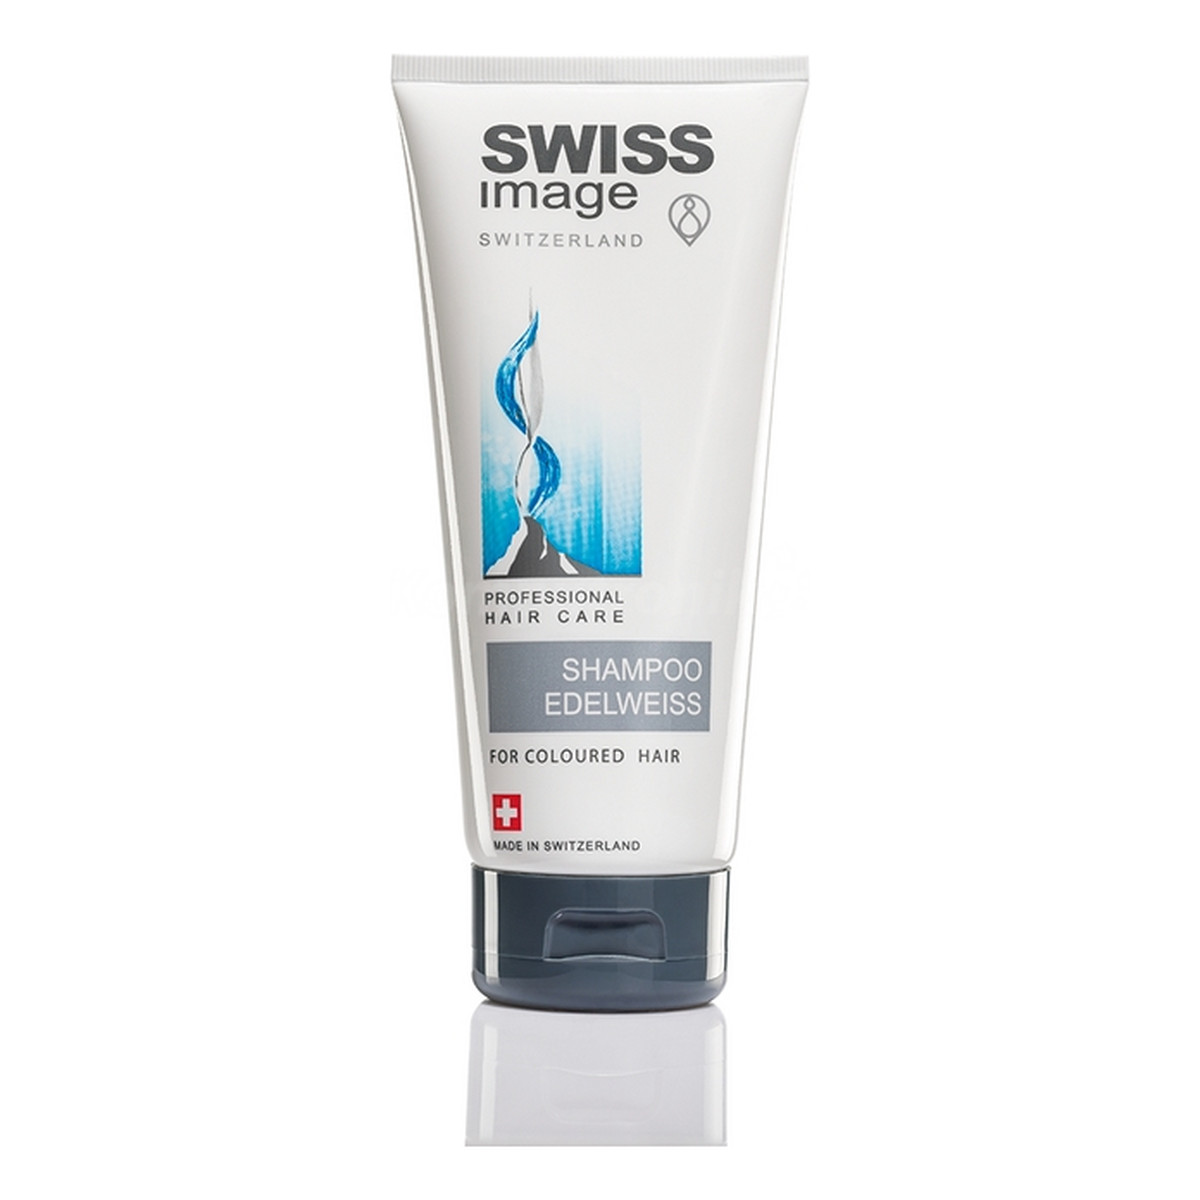 Swiss Image Włosy Farbowane Edelweiss Szampon Do Włosów Ochronny Utrwalający i Pielęgnujący Kolor 200ml